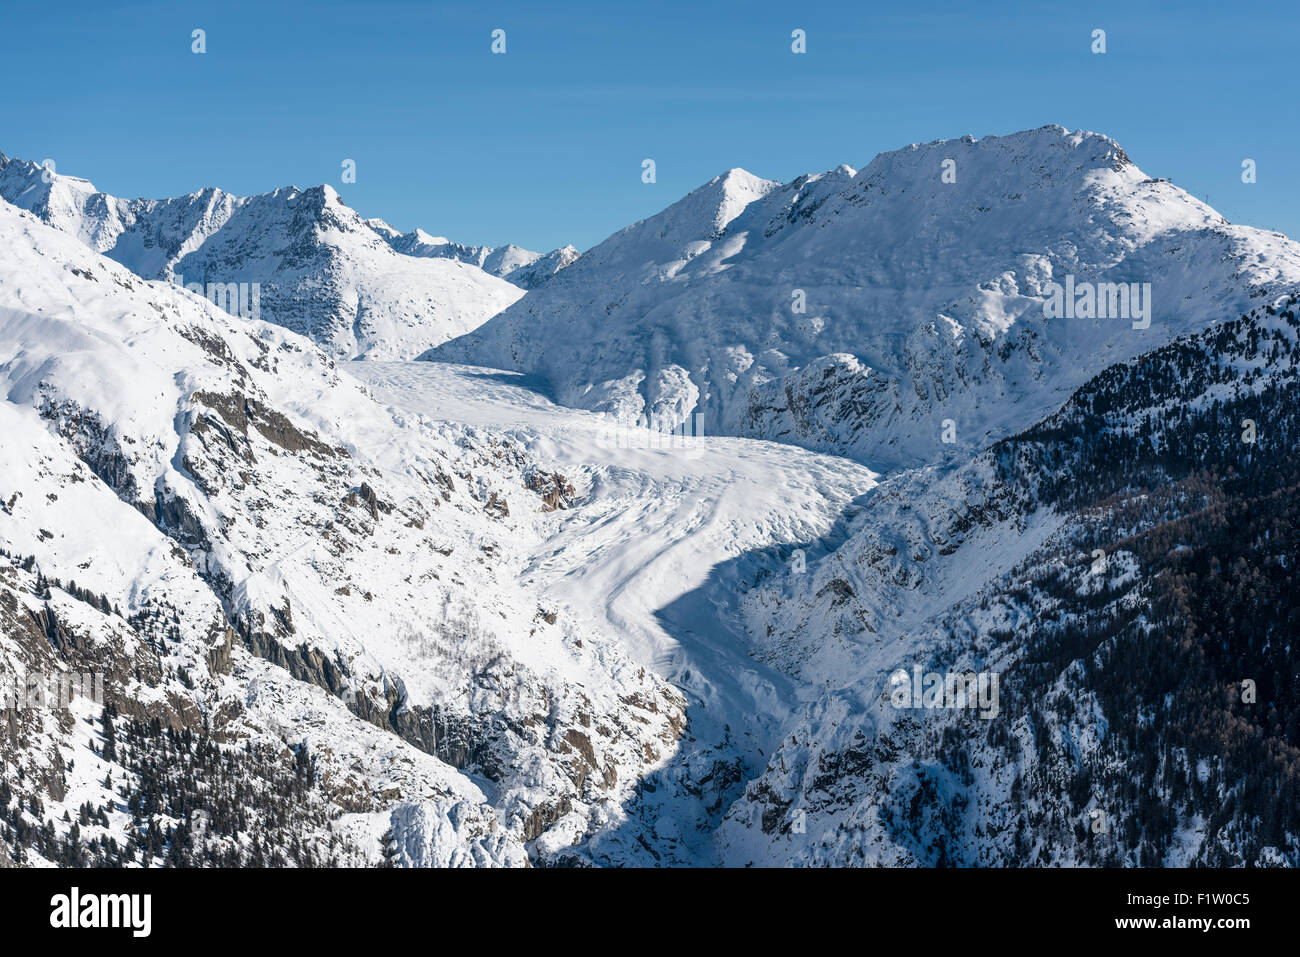 Partie la plus méridionale de la langue du glacier du Grand Glacier d'Aletsch, le plus grand glacier suisse, au cours de l'hiver. Banque D'Images